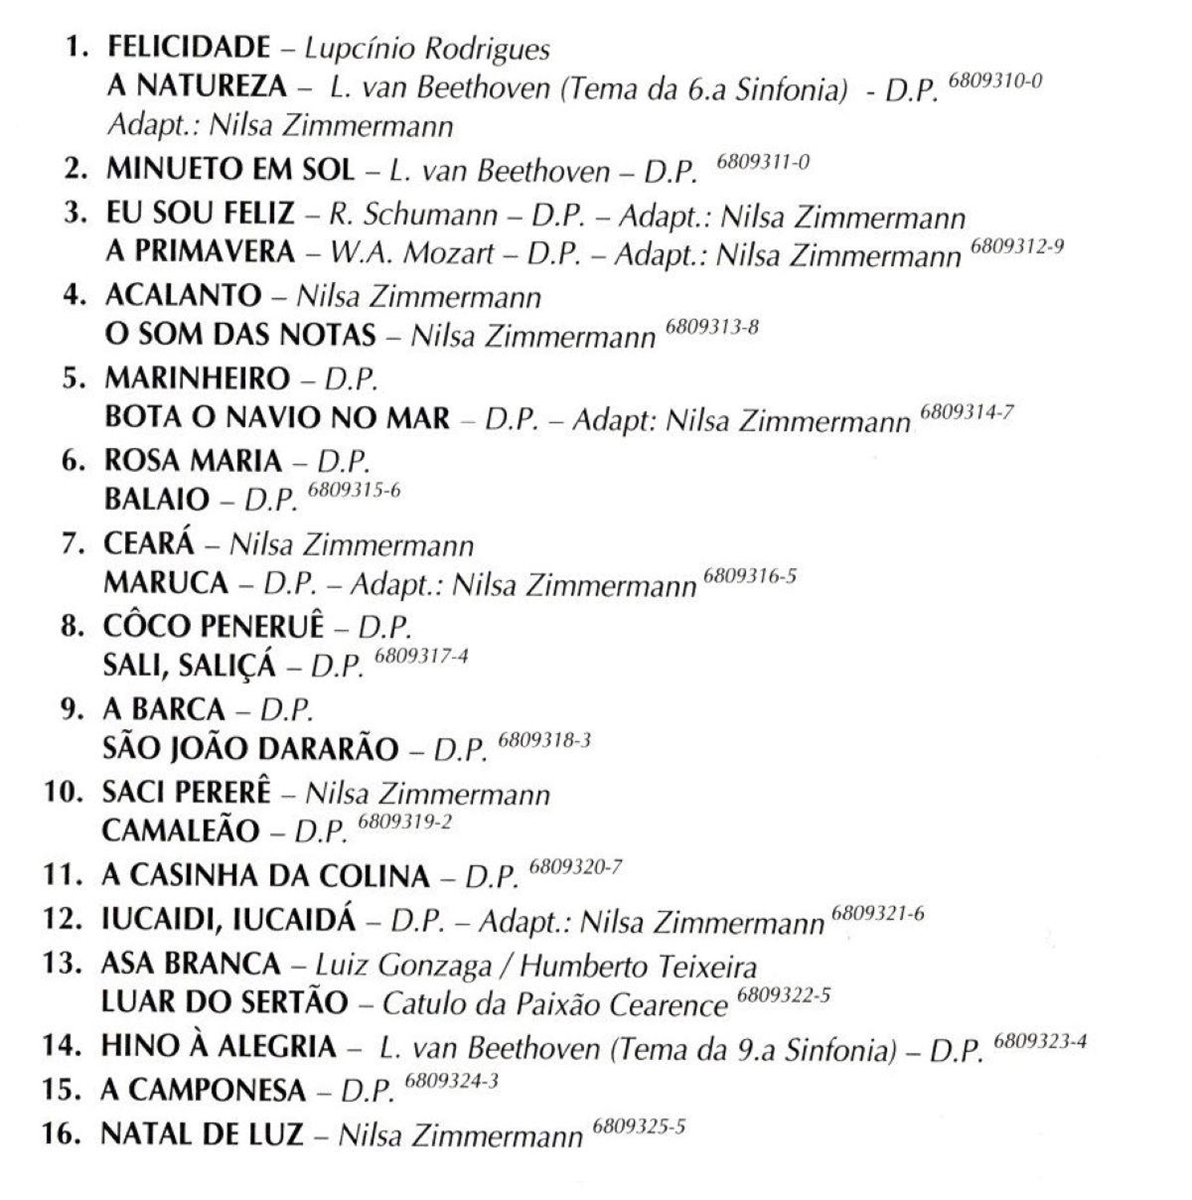 O Mundo Encantado da Música - Vol.II - FÁ, SOL, de Nilsa Zimmermann - O  Mundo Encantado da Música - Vol.2 - Paulinas